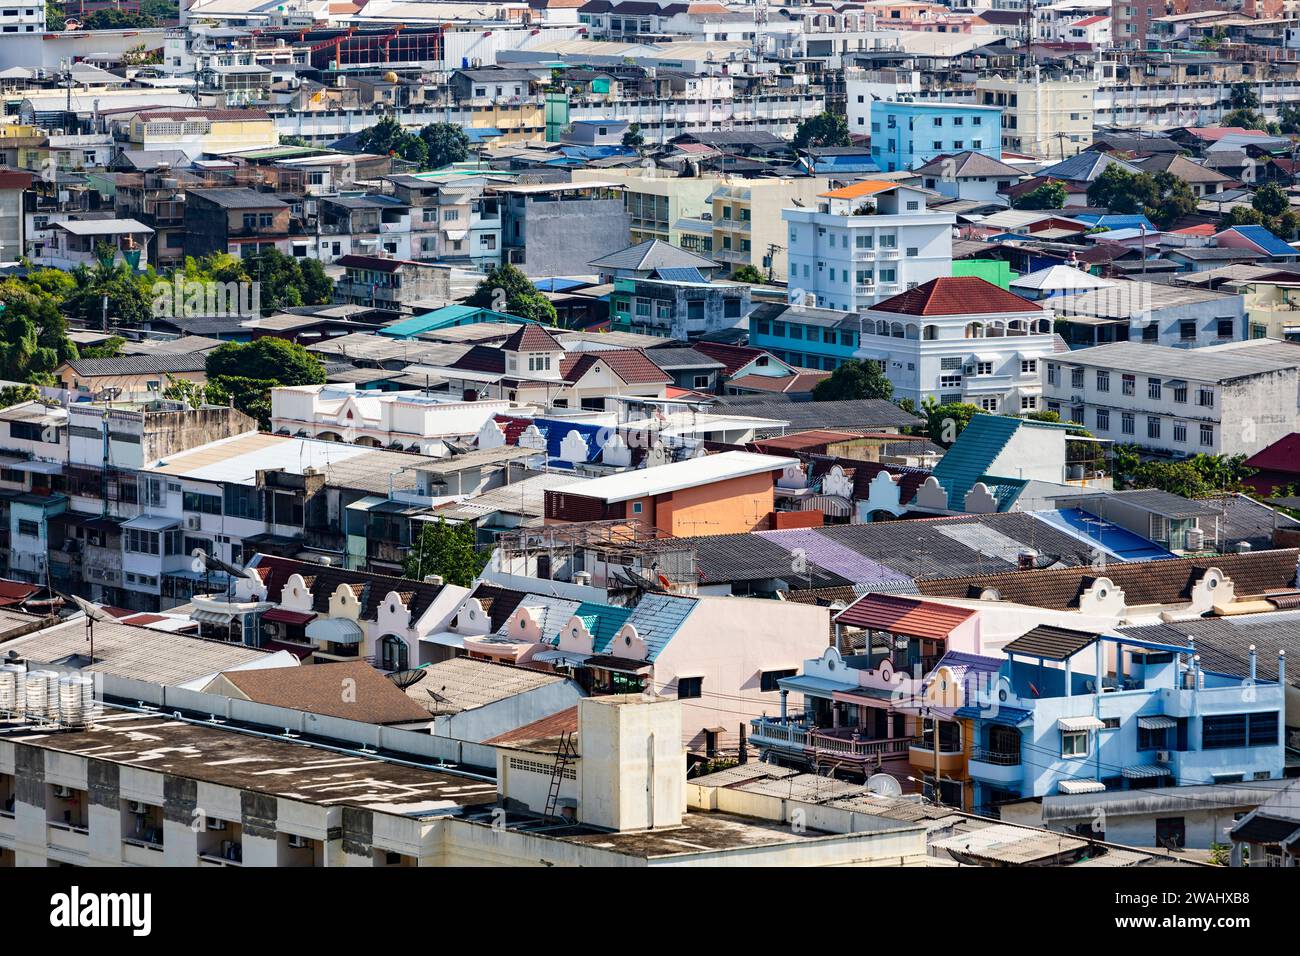 A cityscape shot of dense housing in Bangkok, Thailand Stock Photo